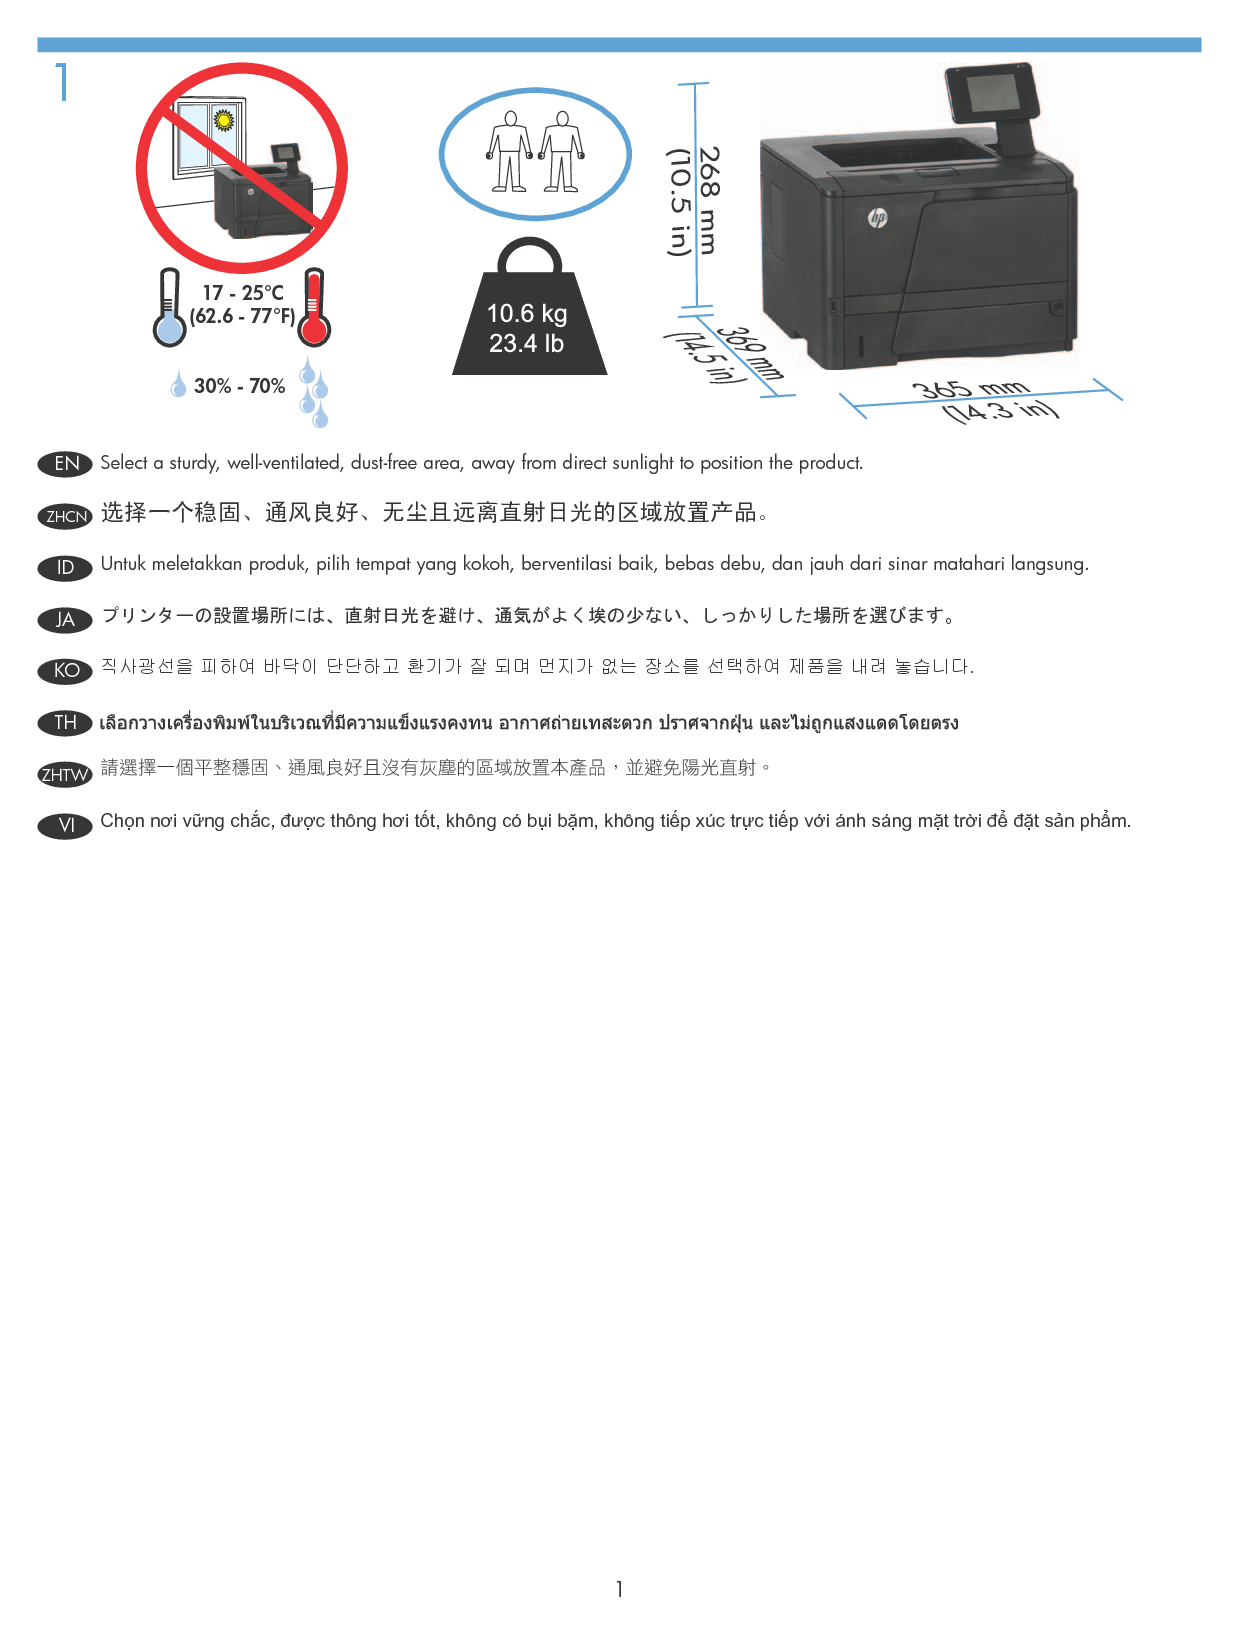 惠普 HP LaserJet Pro 400 M401n 安装指南 第1页